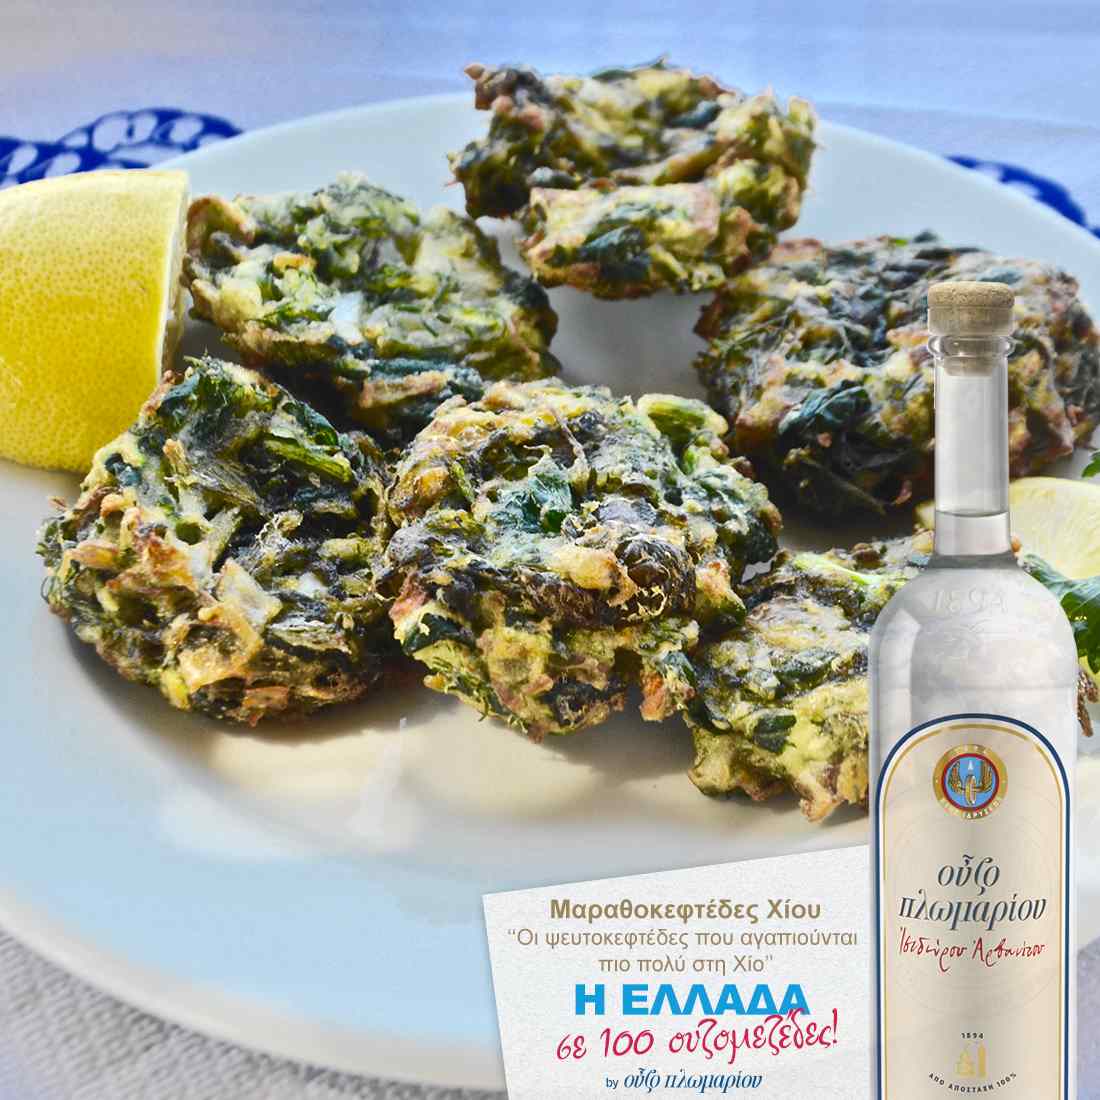 Μαραθροκεφτέδες Χίου - Ουζομεζέδες - Greek Gastronomy Guide